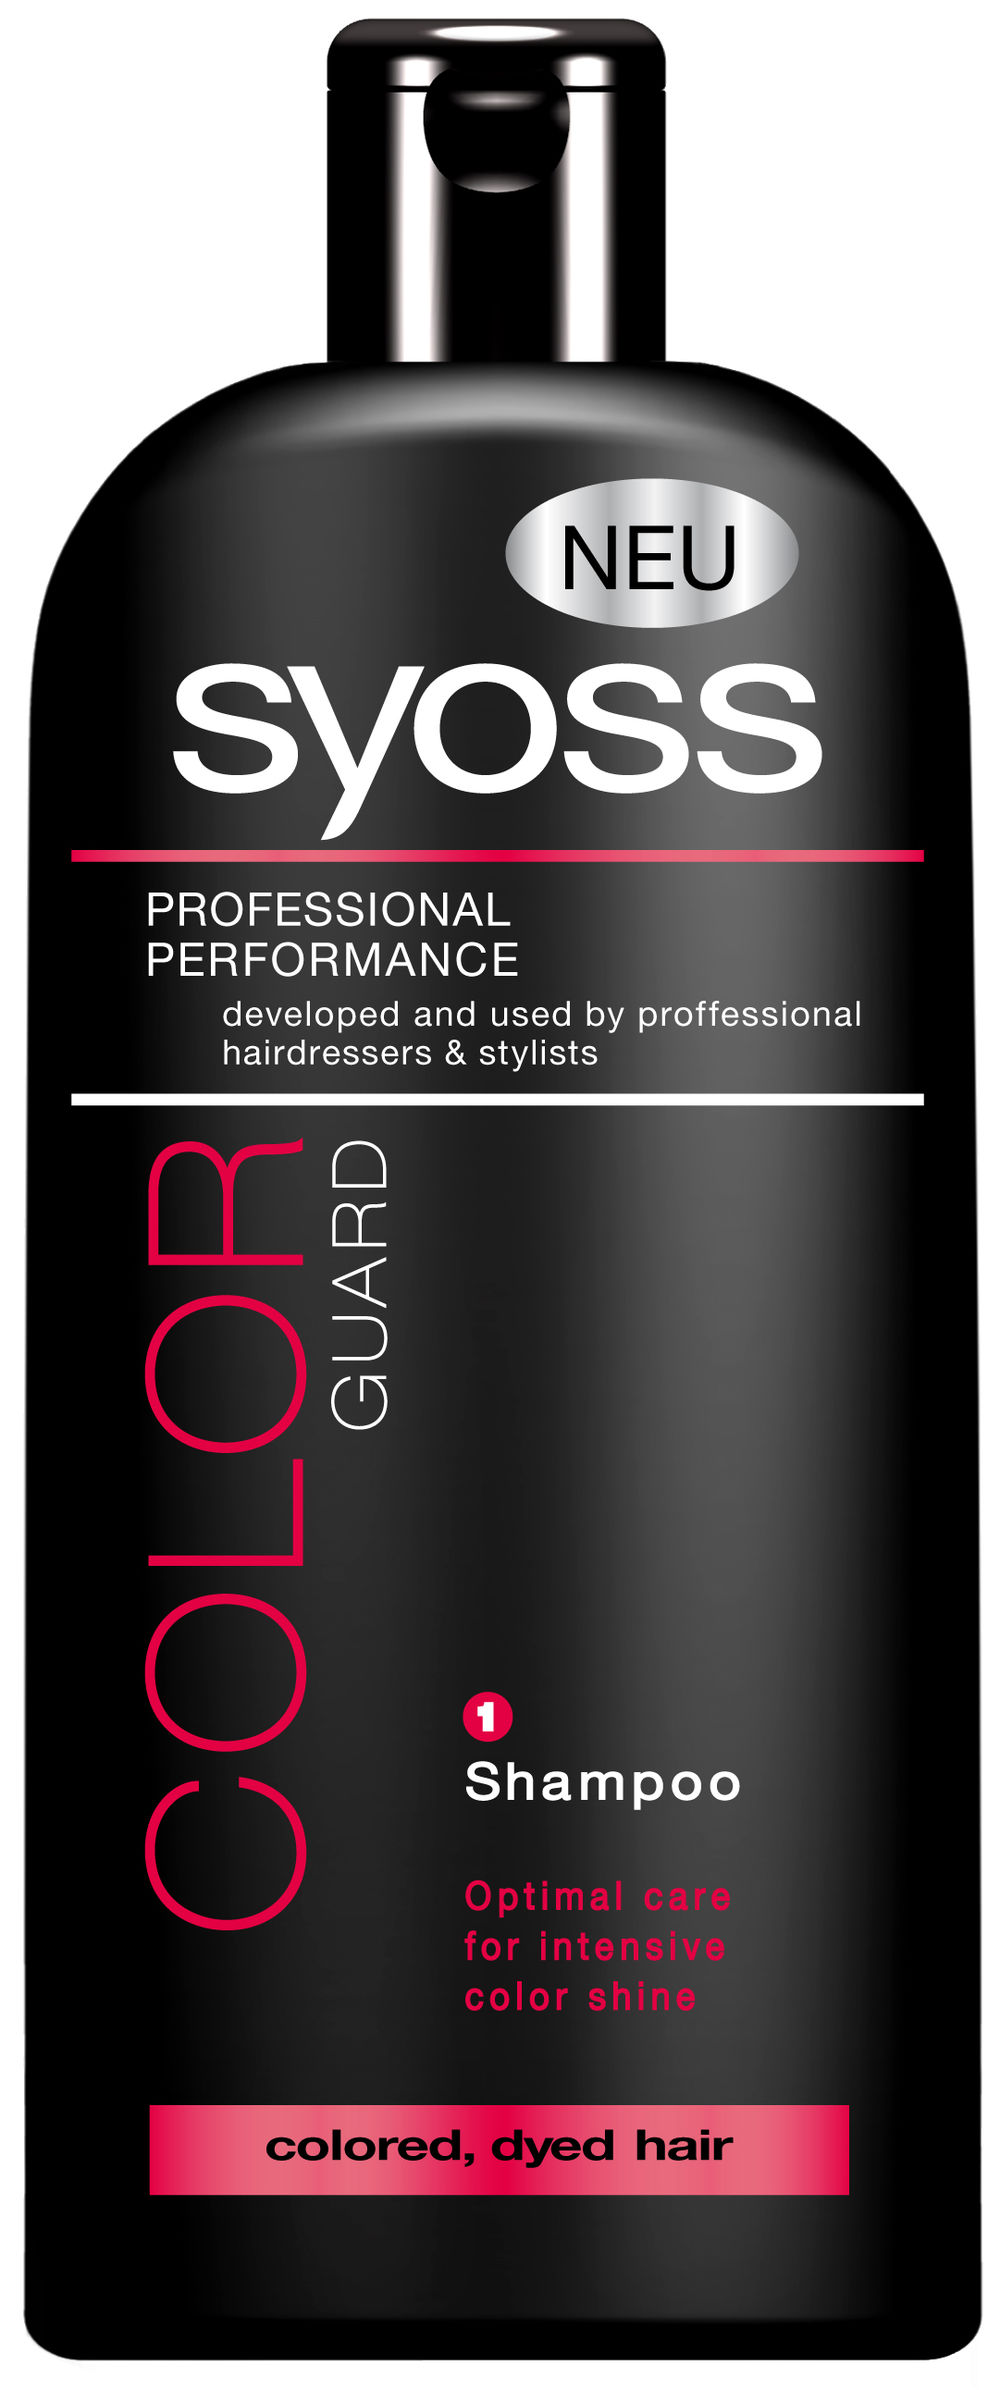 Profesionalna linija preparata za negu kose SYOSS od sada je dostupna i u maloprodajnim objektima po pristupačnim cenama